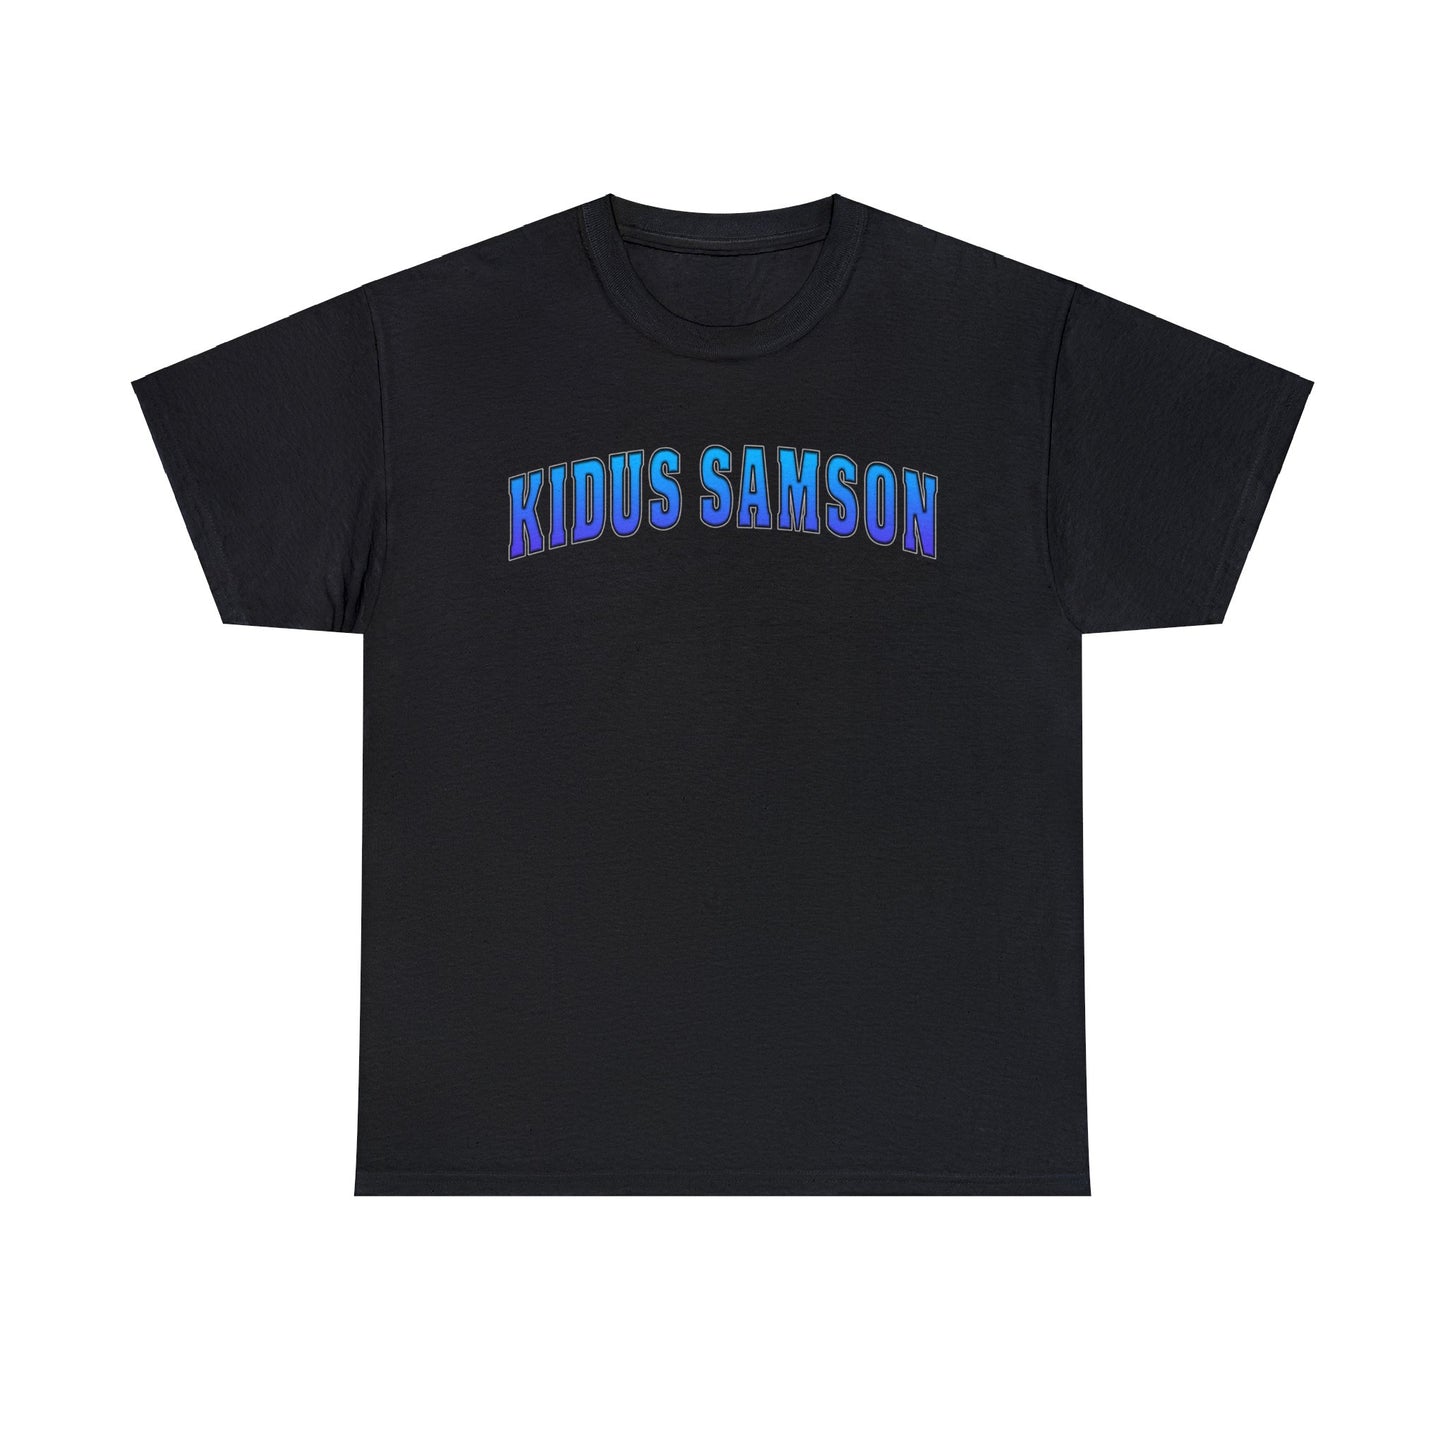 Kidus Samson Heavy Cotton Tee